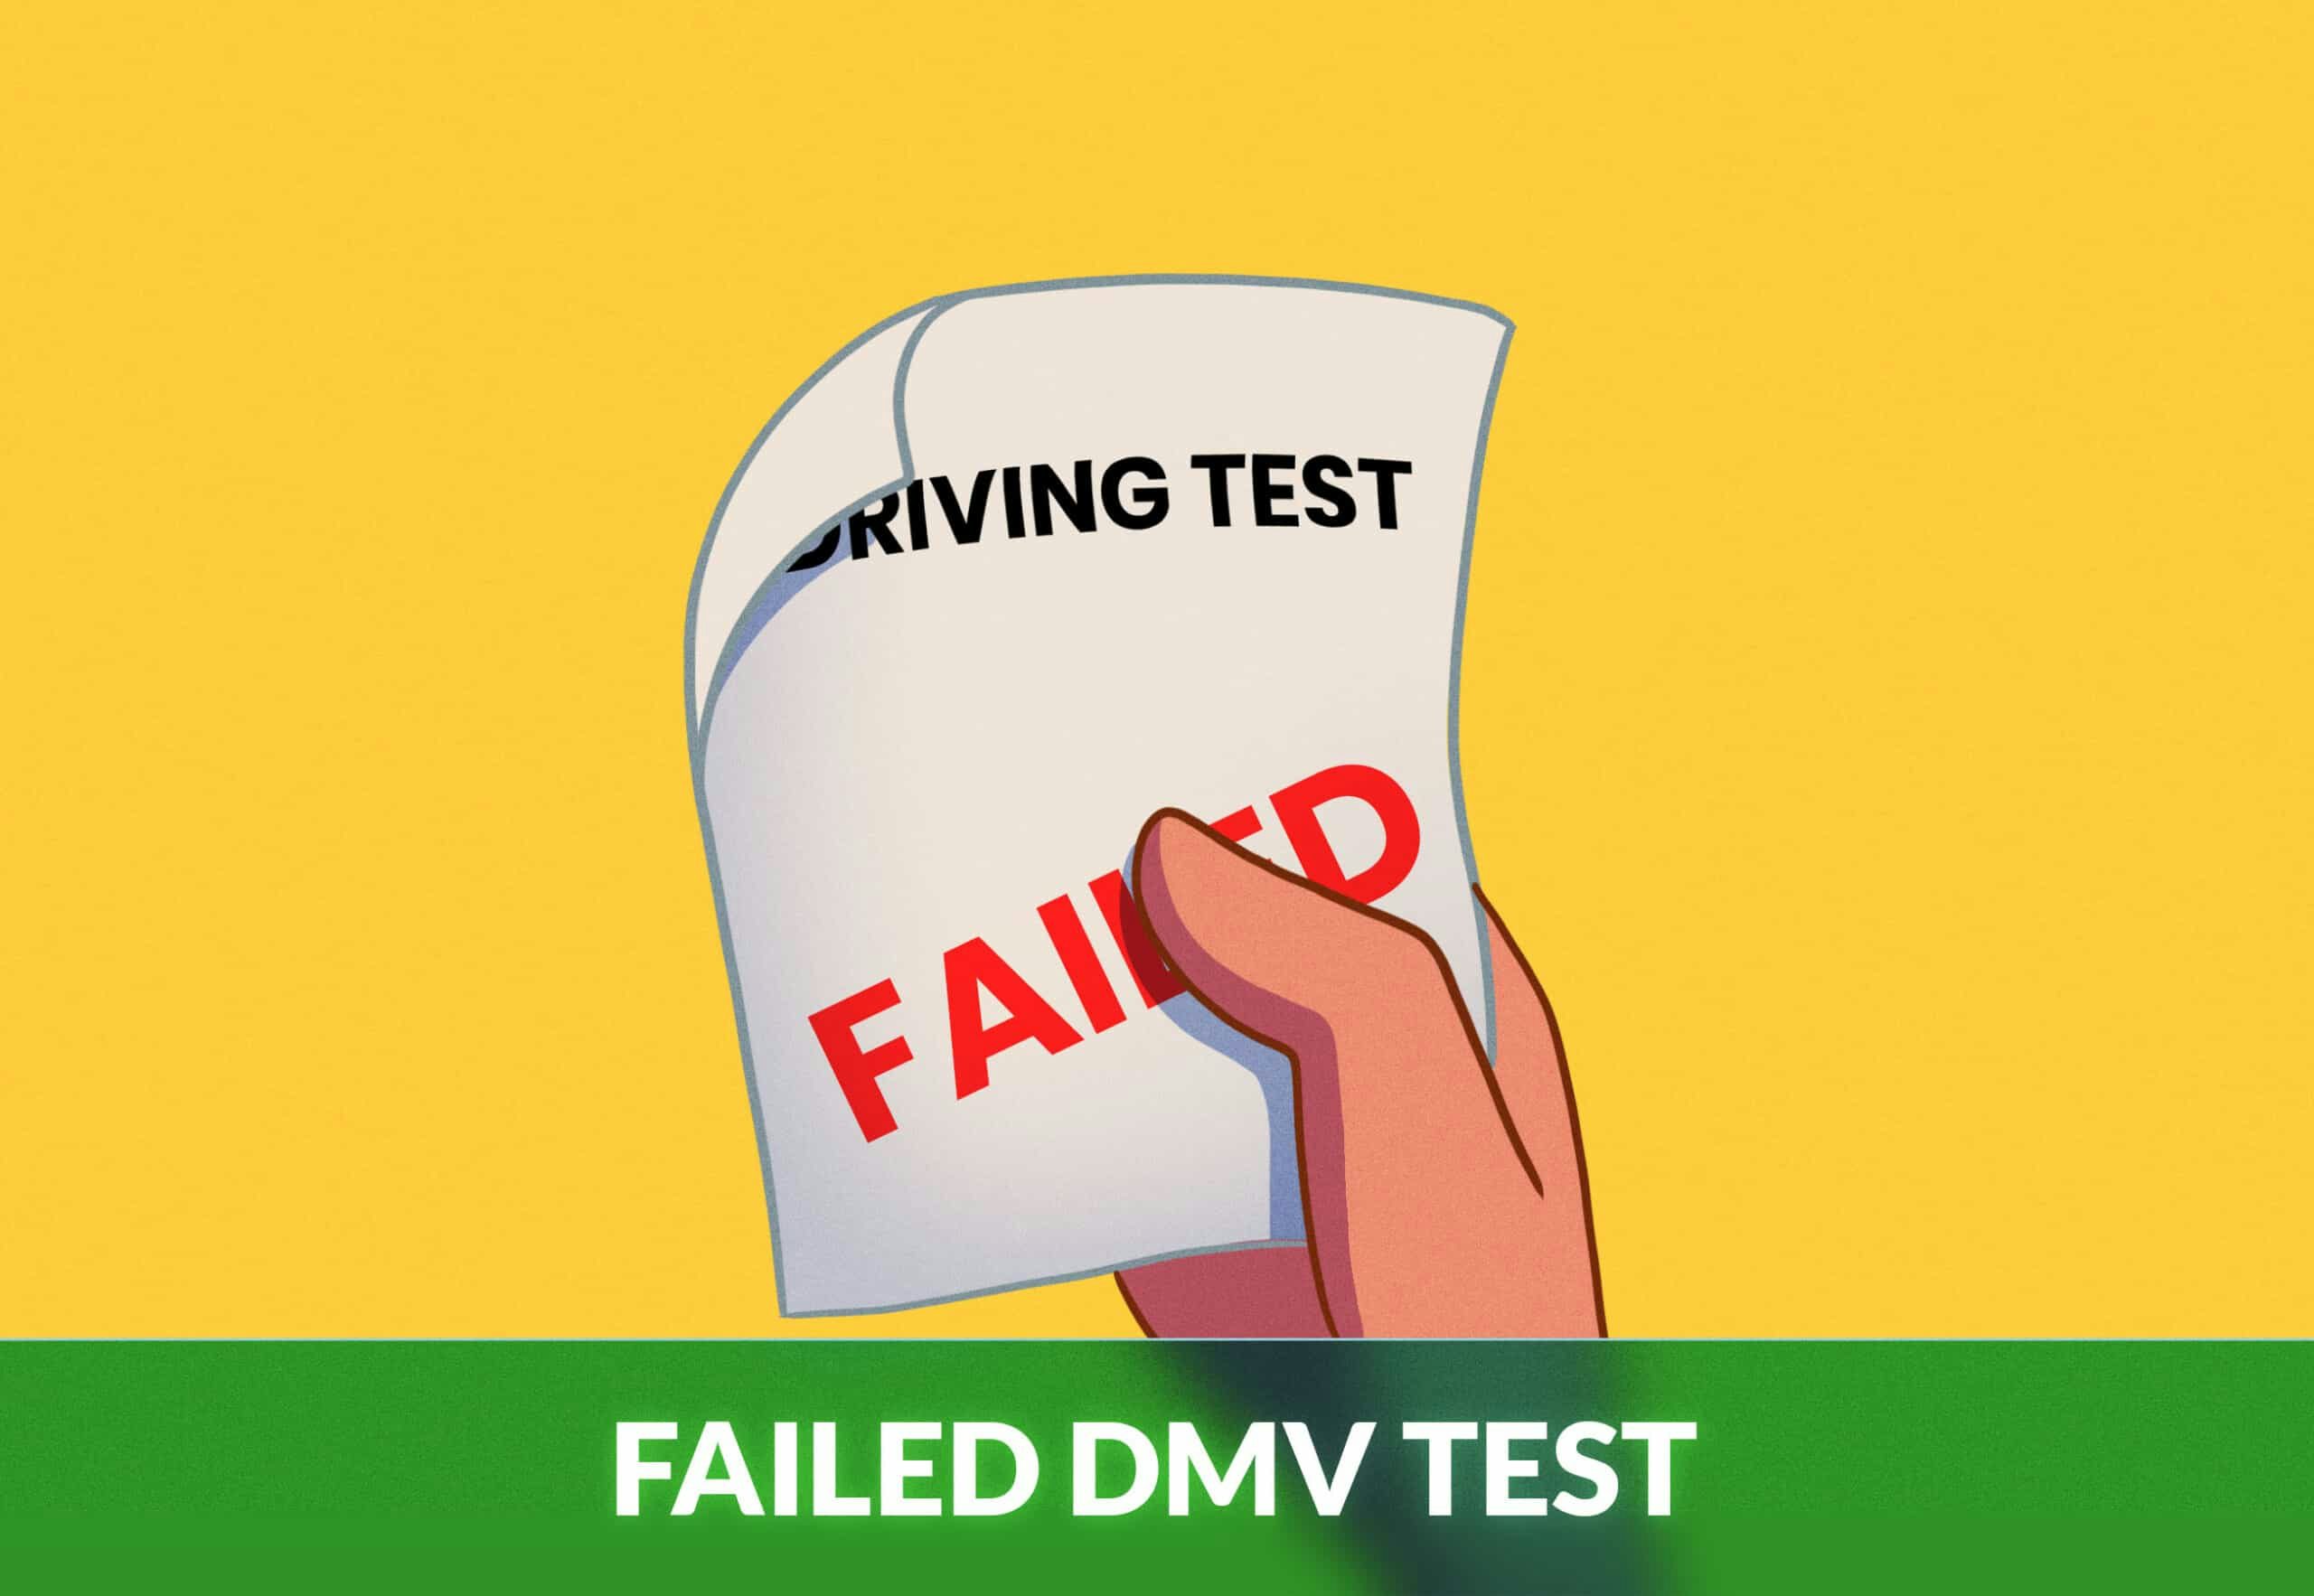 FAILED DMV TEST